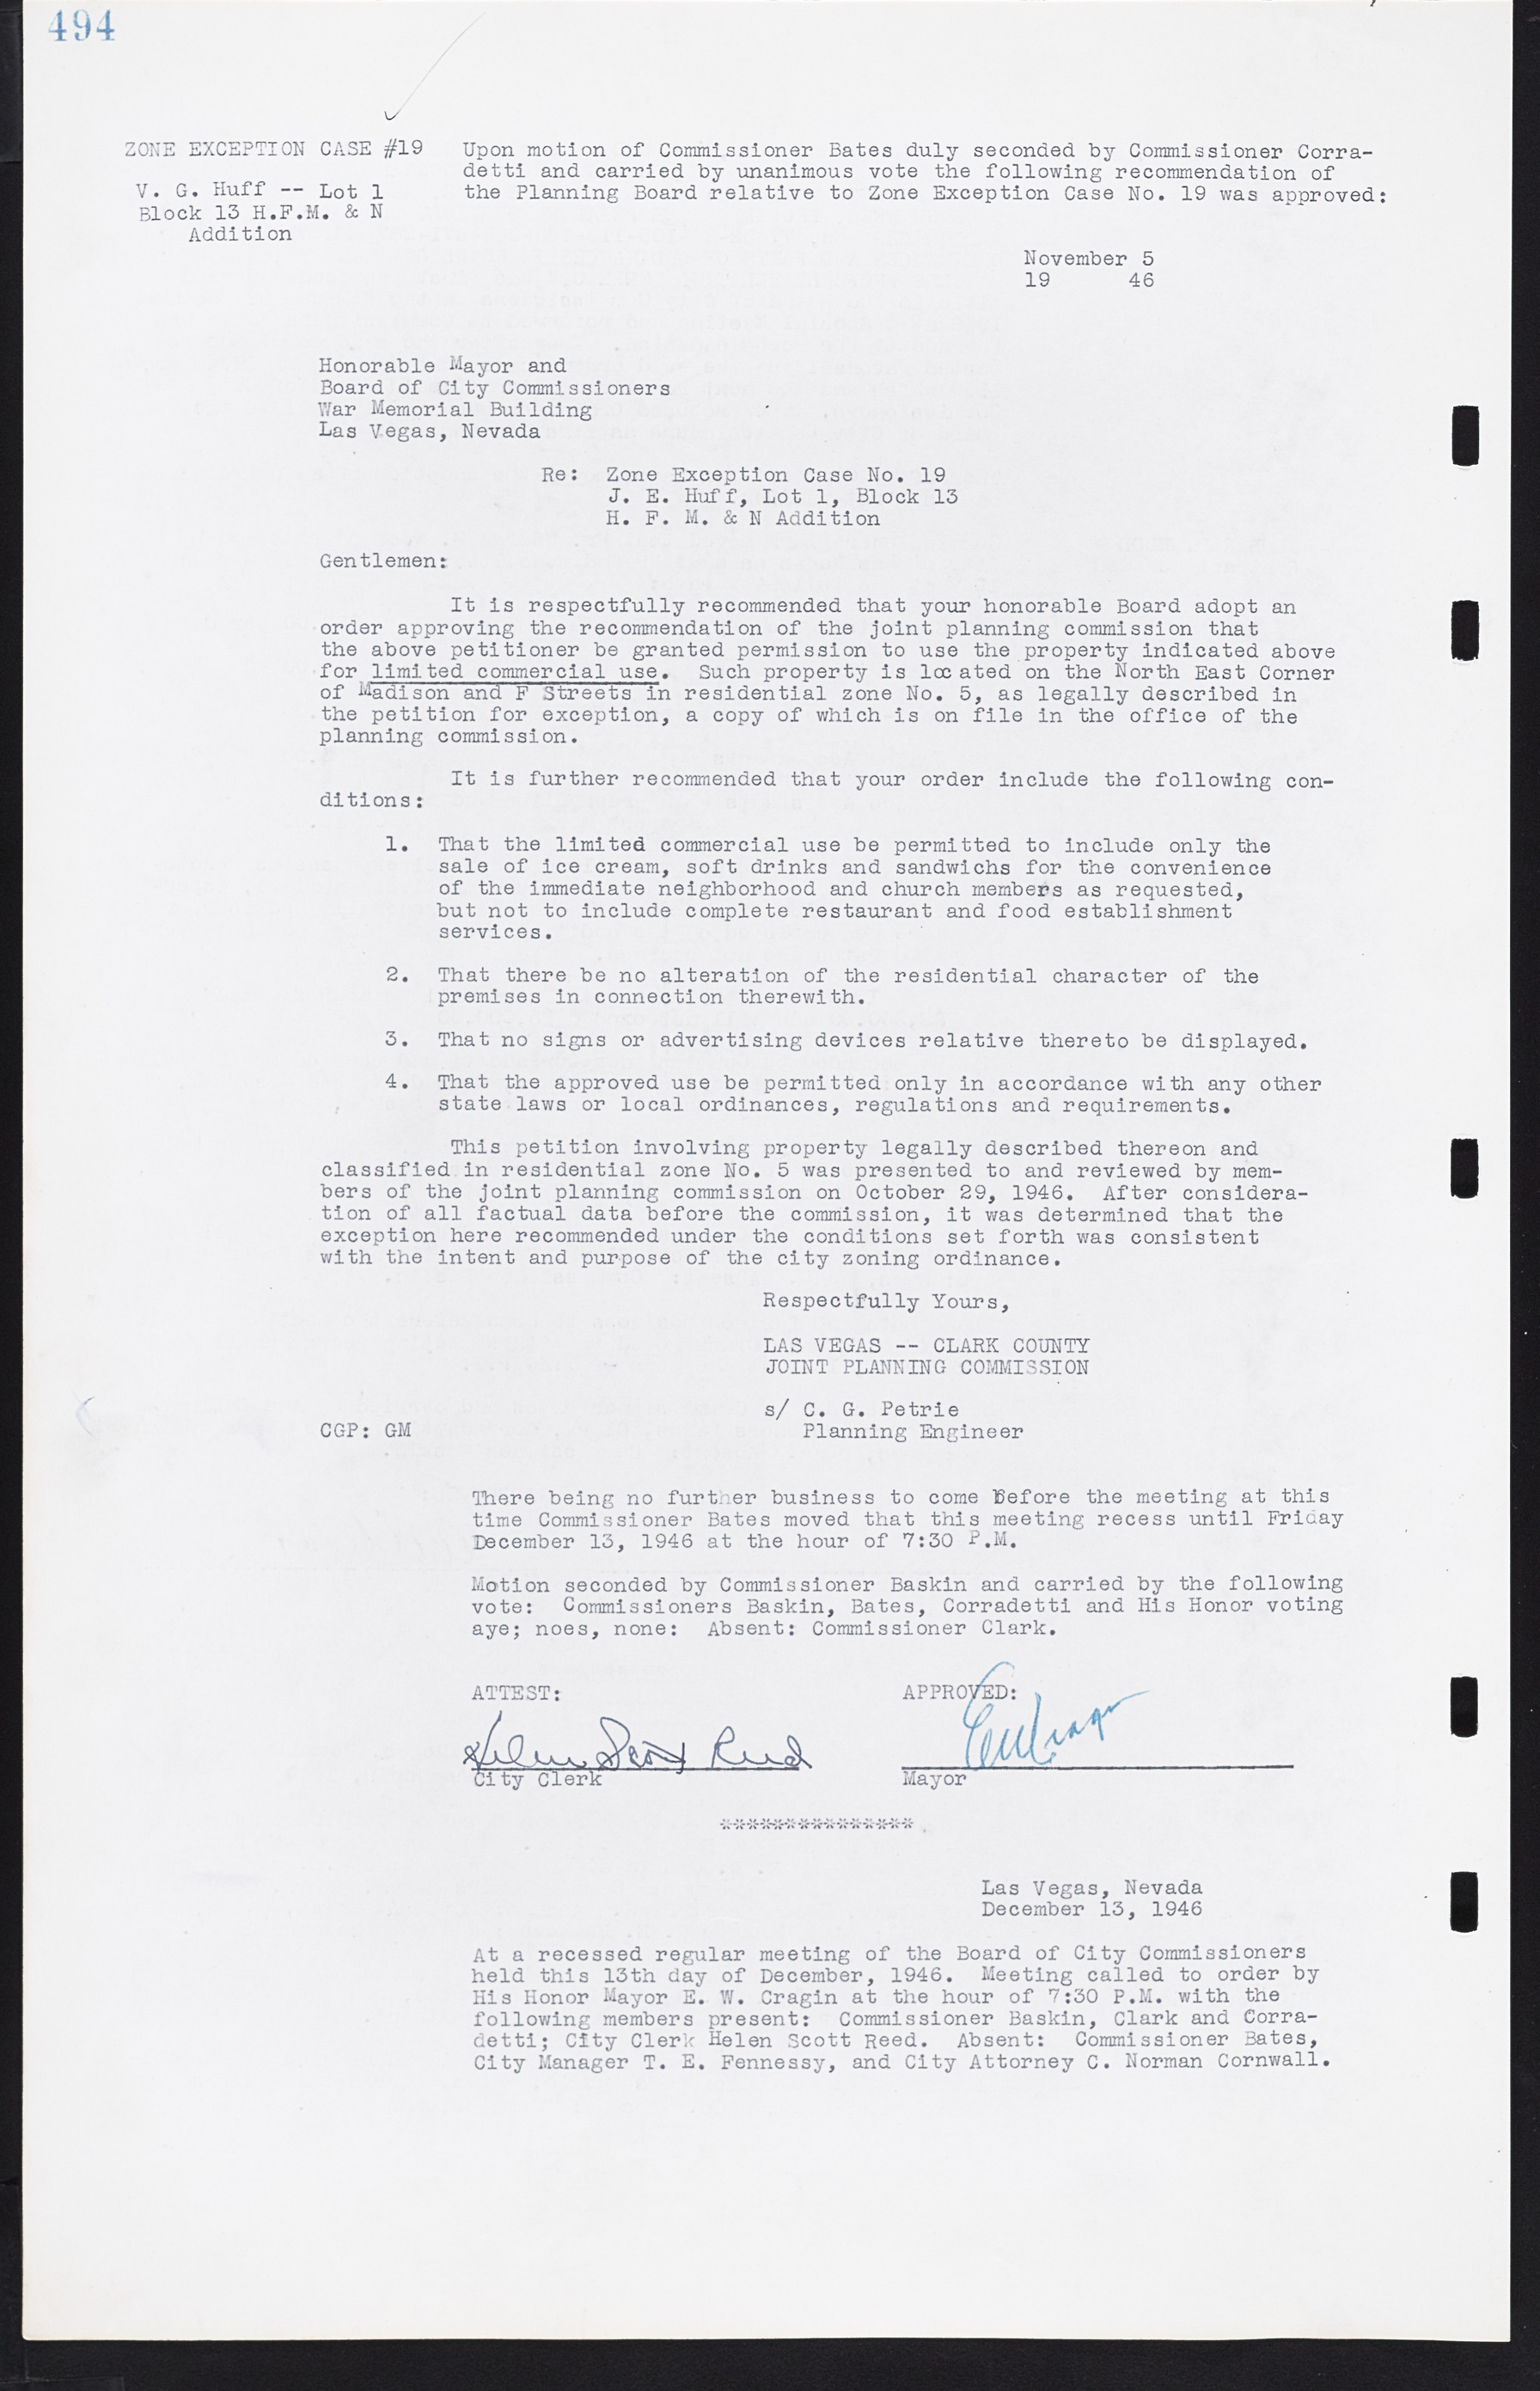 Las Vegas City Commission Minutes, August 11, 1942 to December 30, 1946, lvc000005-525